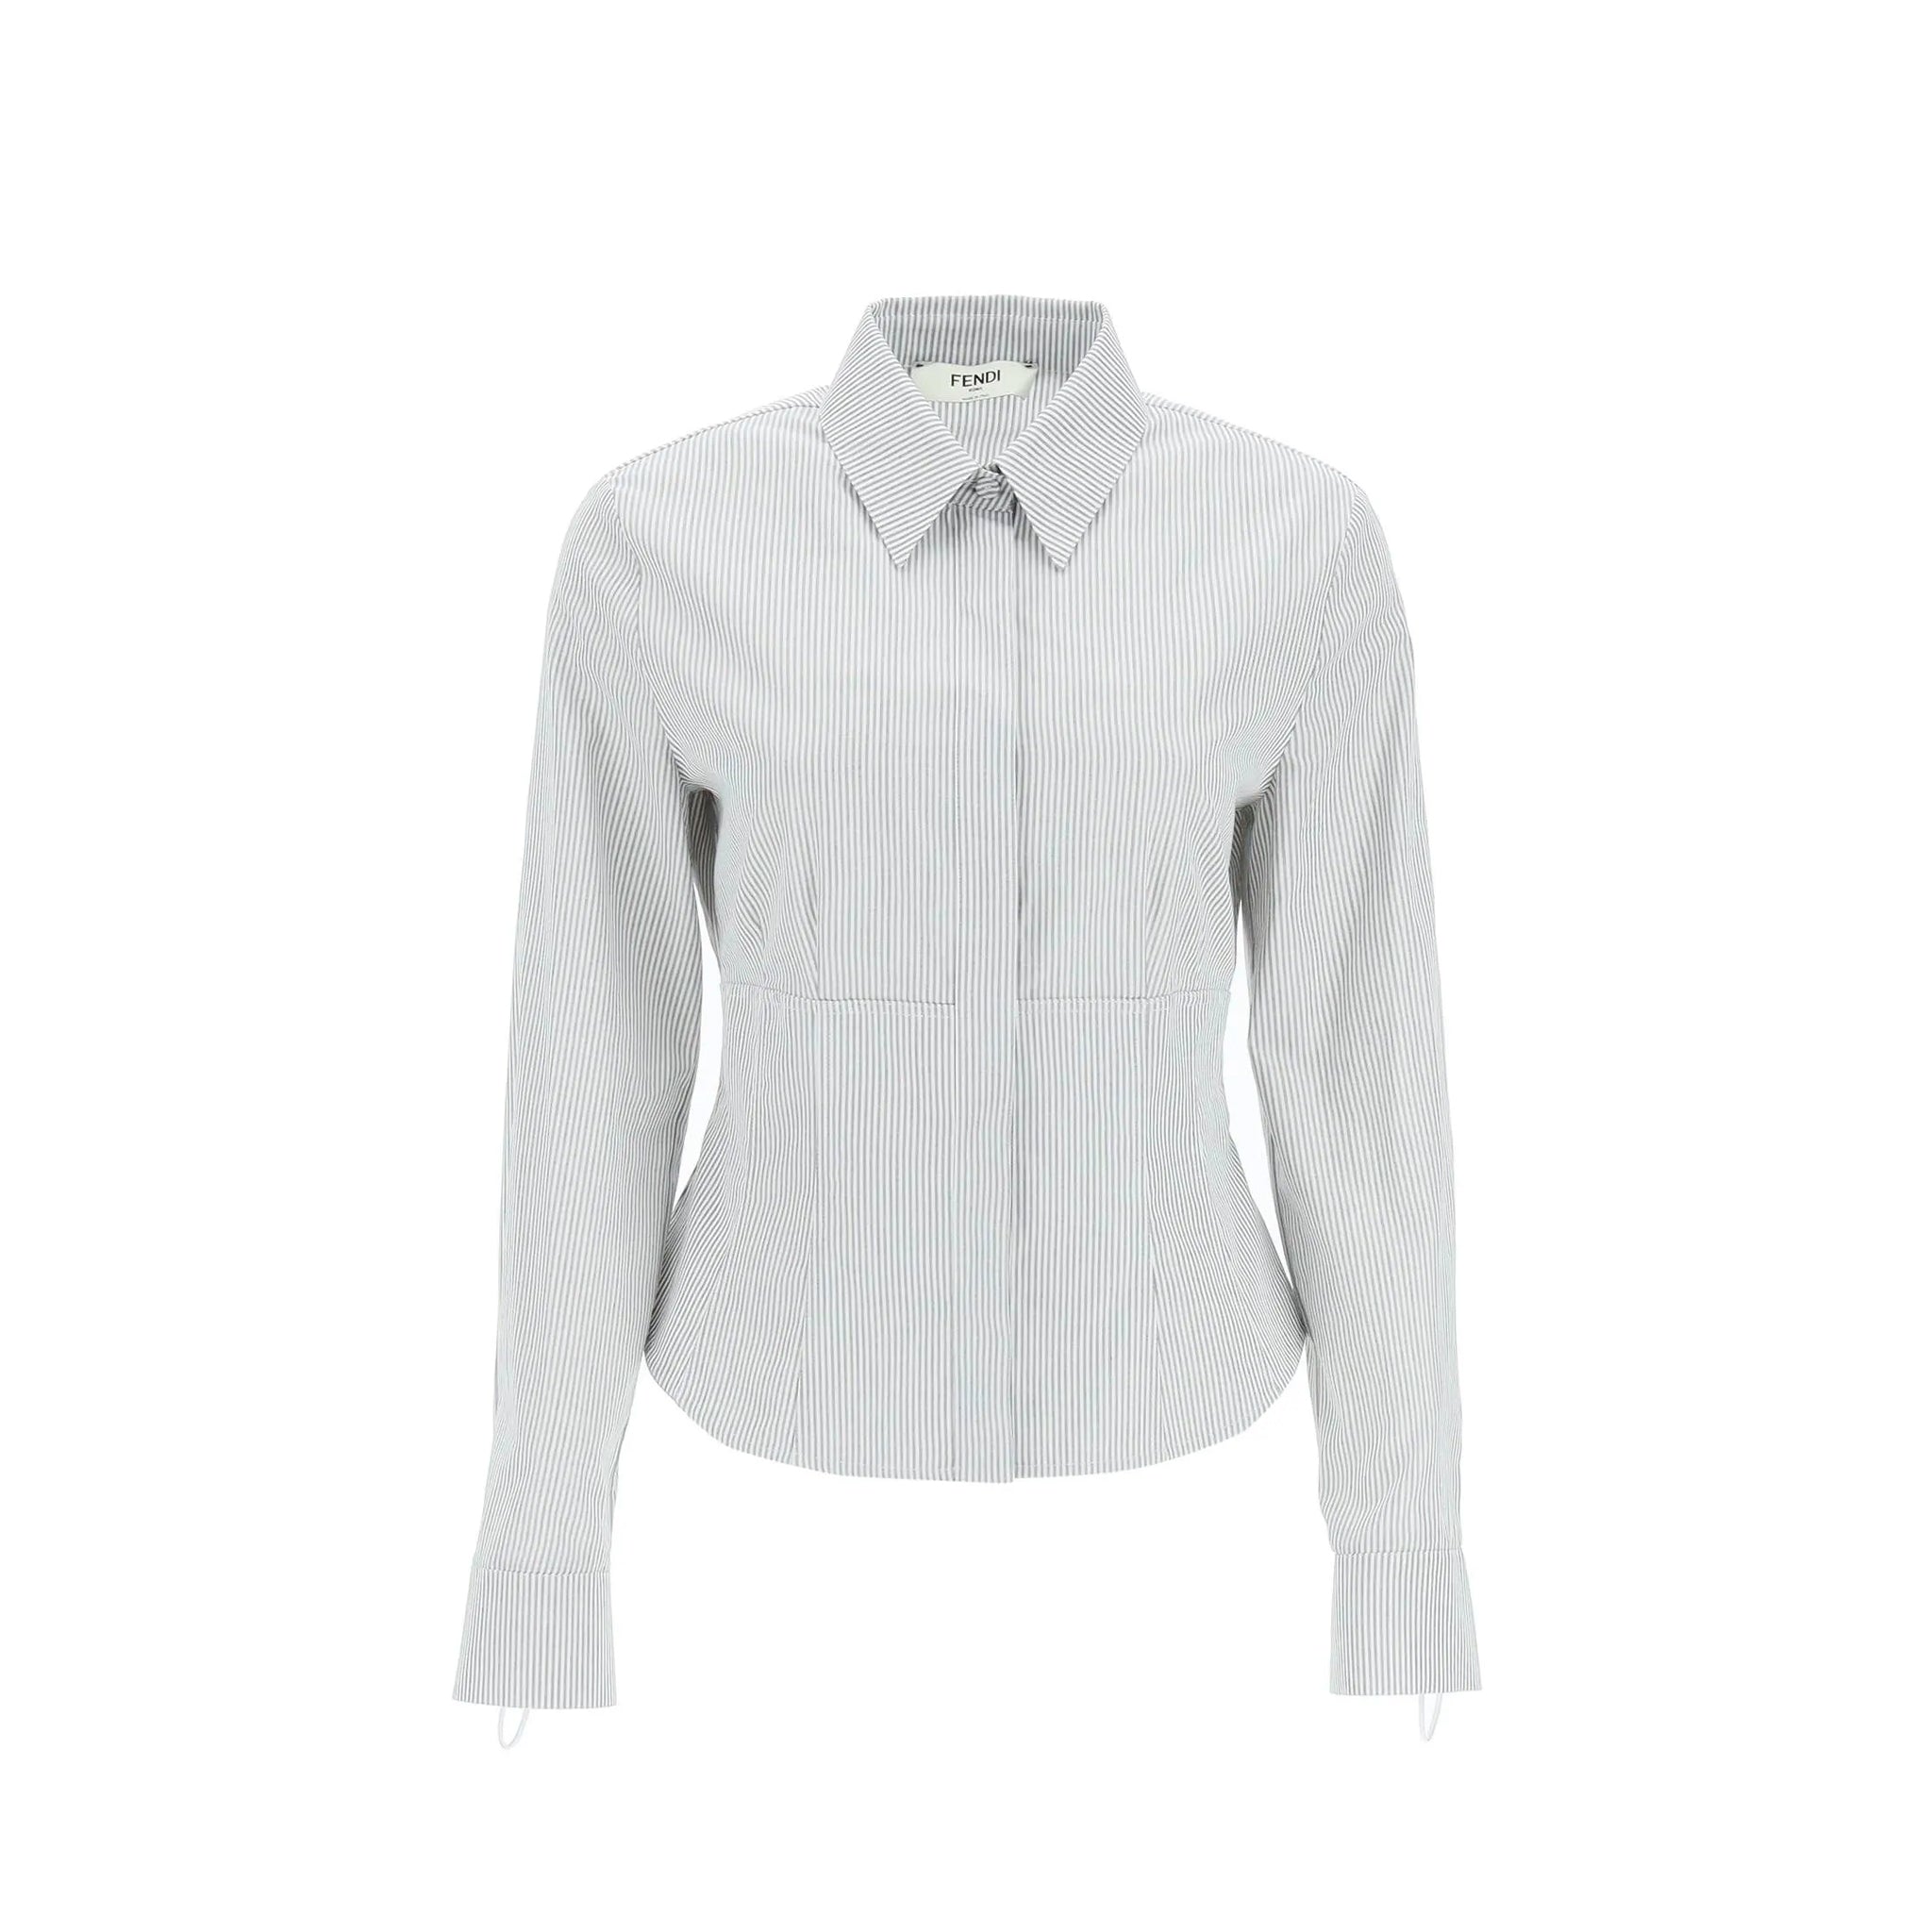 FENDI-OUTLET-SALE-Fendi-Cotton-Shirt-Shirts-ARCHIVE-COLLECTION.jpg